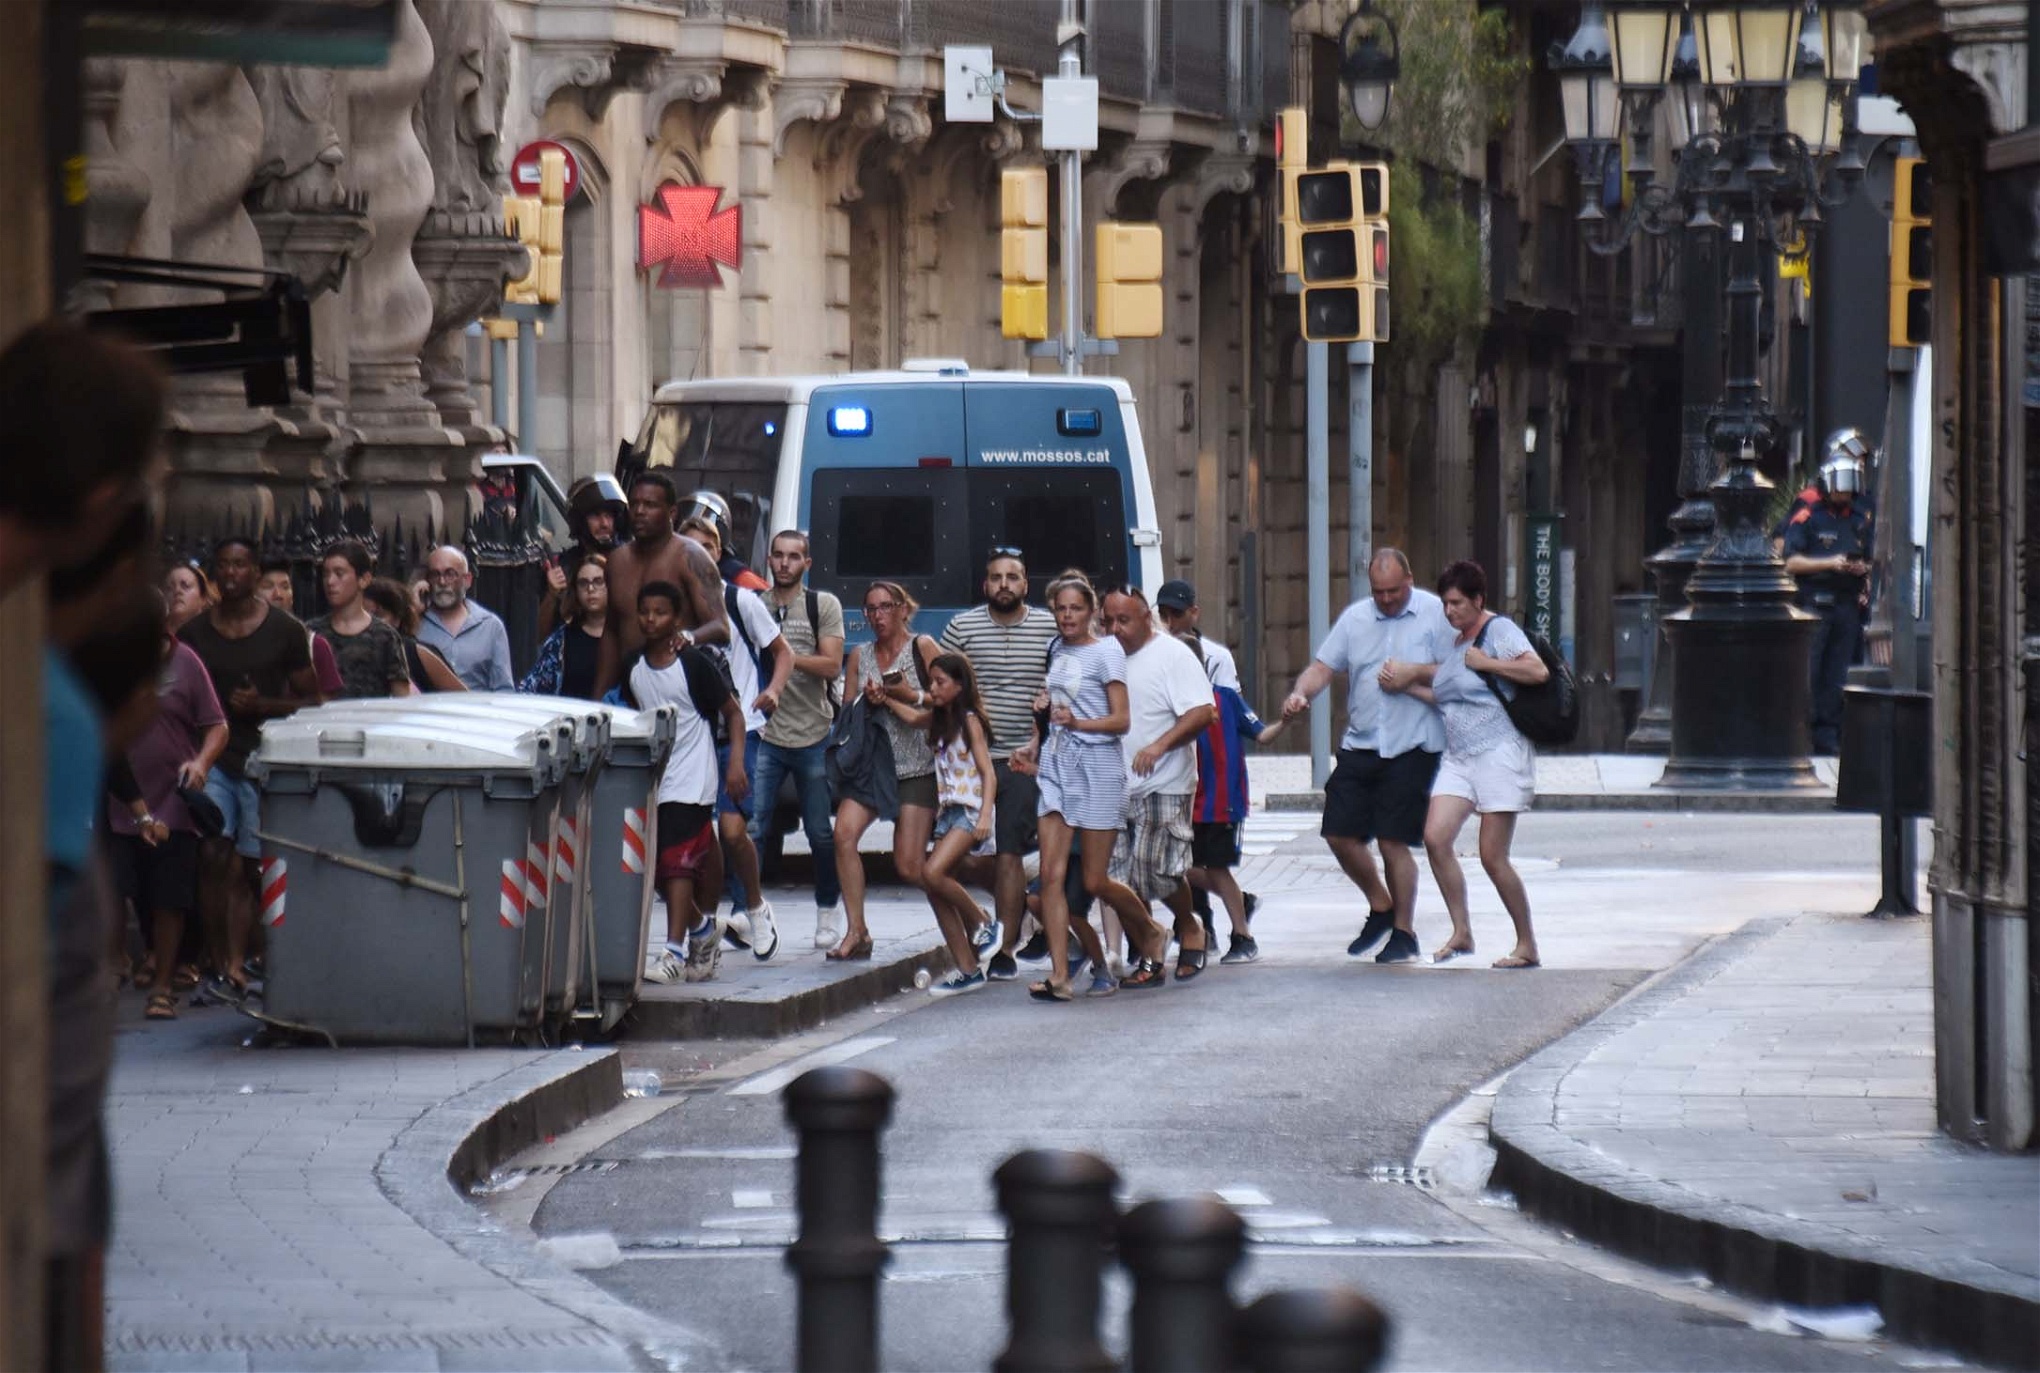 Människor flyr platsen efter att skåpbilen kört in i folksamlingen på La Rambla.